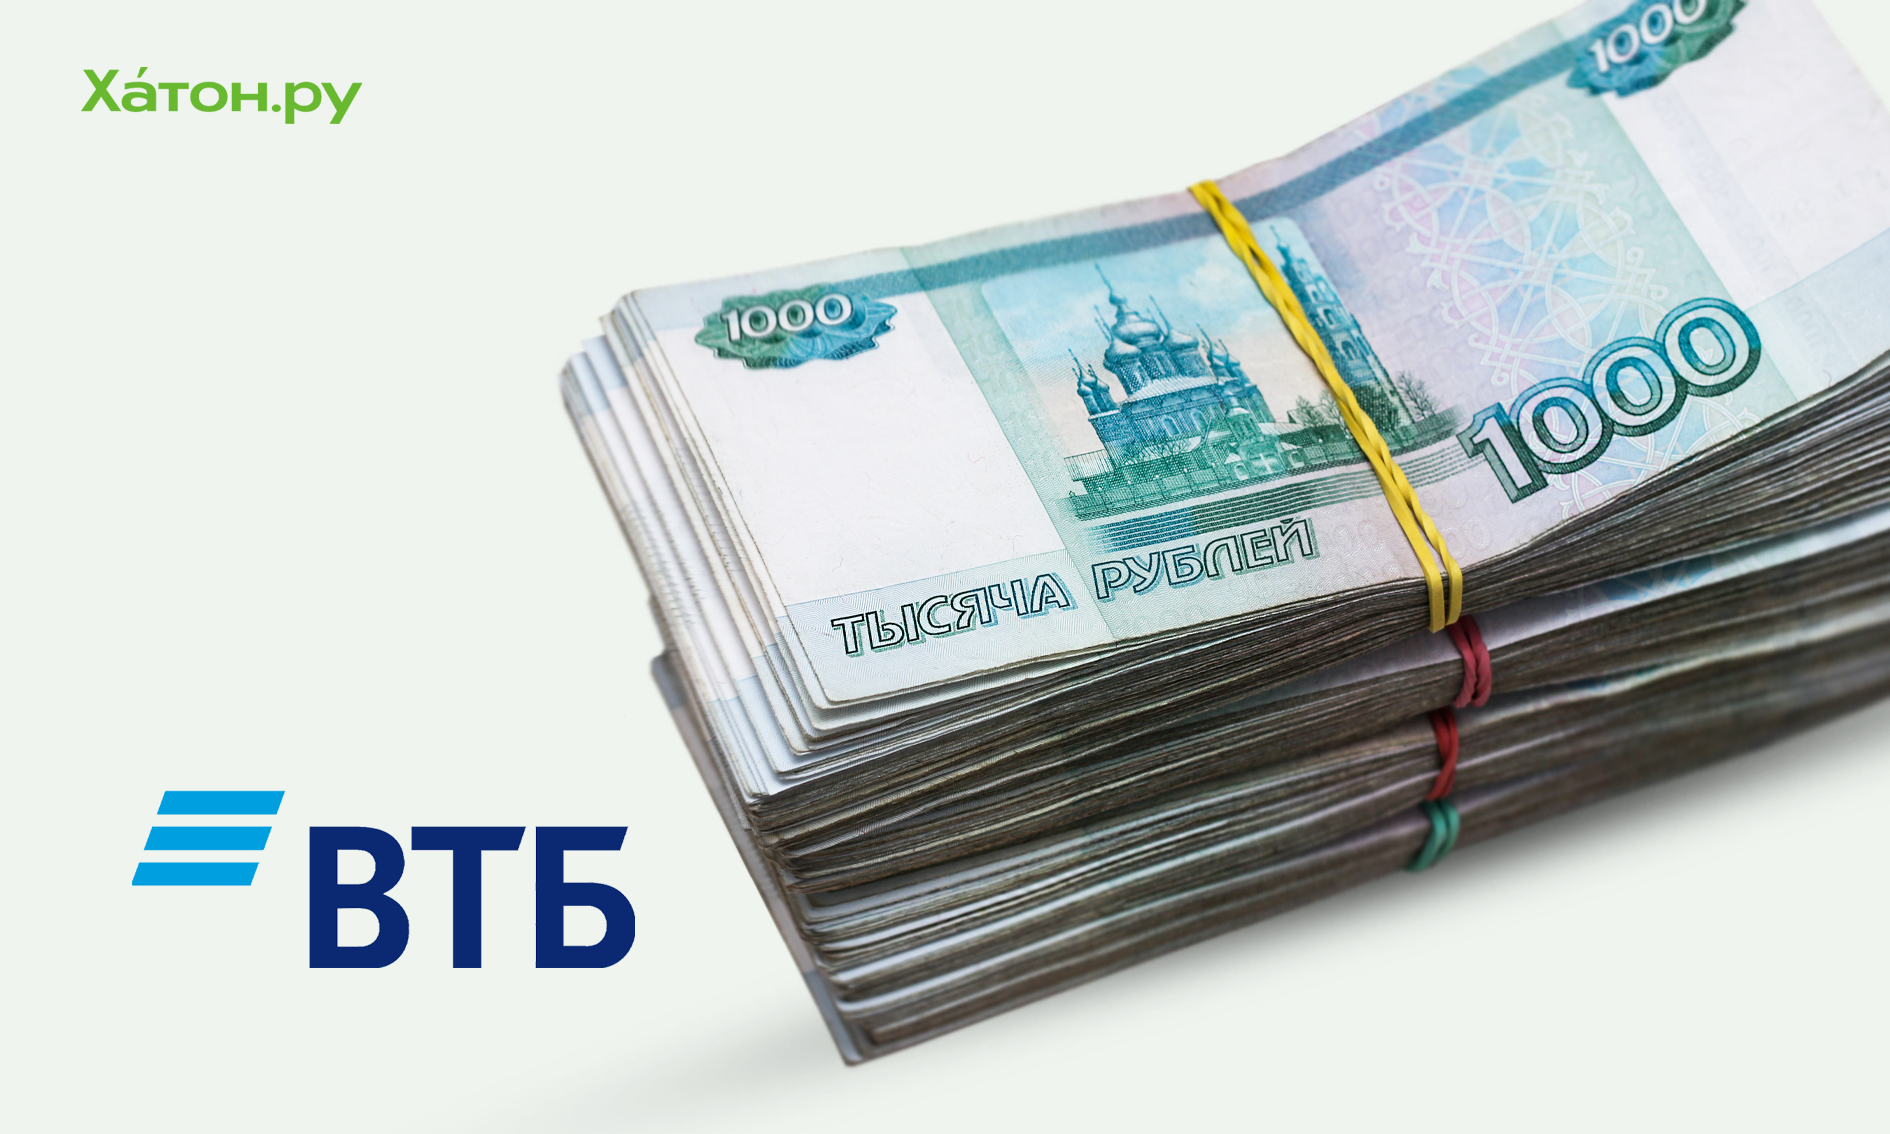 ВТБ начнет выдачу экспресс-кредитов на сумму до 100 тыс. рублей